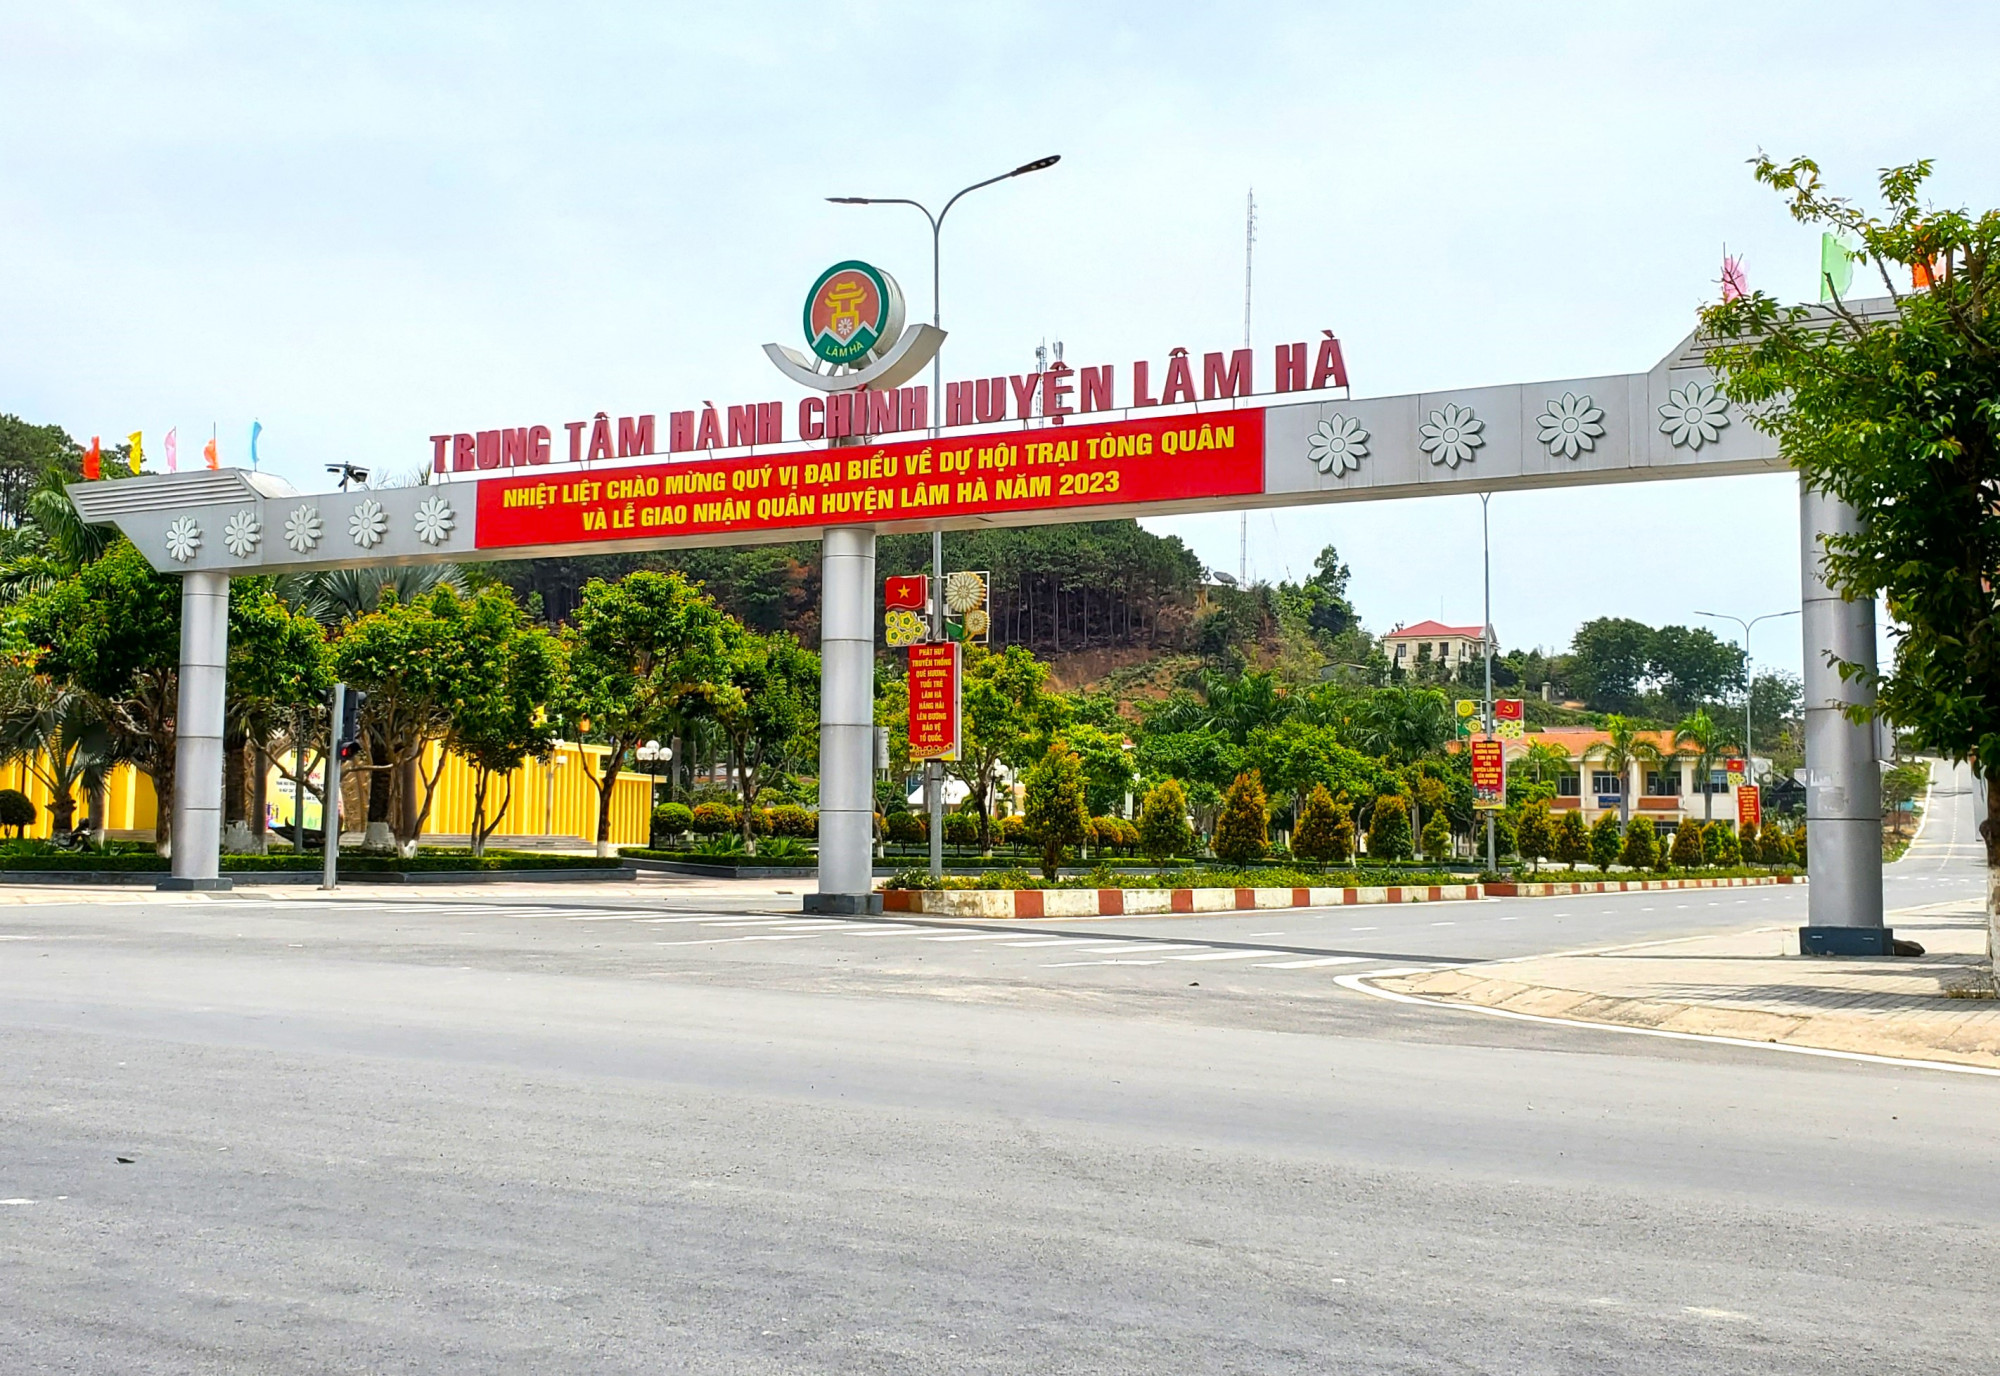 Lâm Đồng: Đề xuất làm cổng chào huyện Lâm Hà để quảng bá hình ảnh địa phương - 1